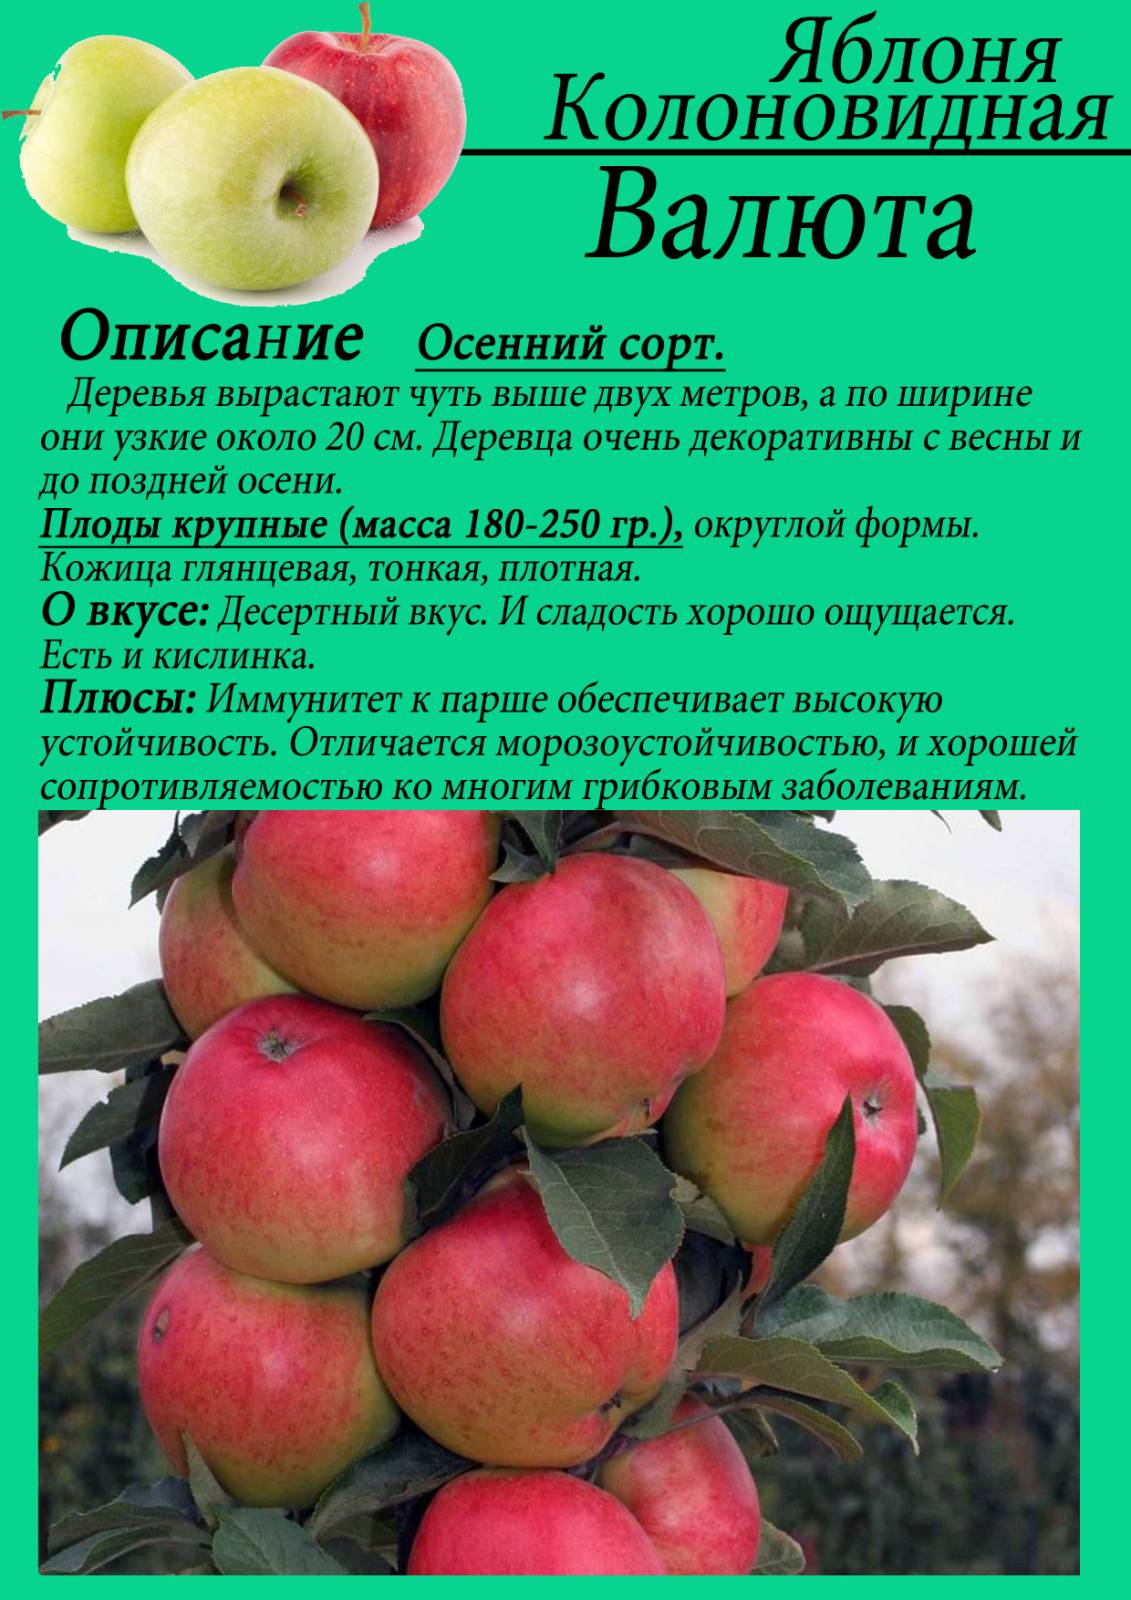 Яблоня глостер: описание сорта яблок, посадка + фото, отзывы